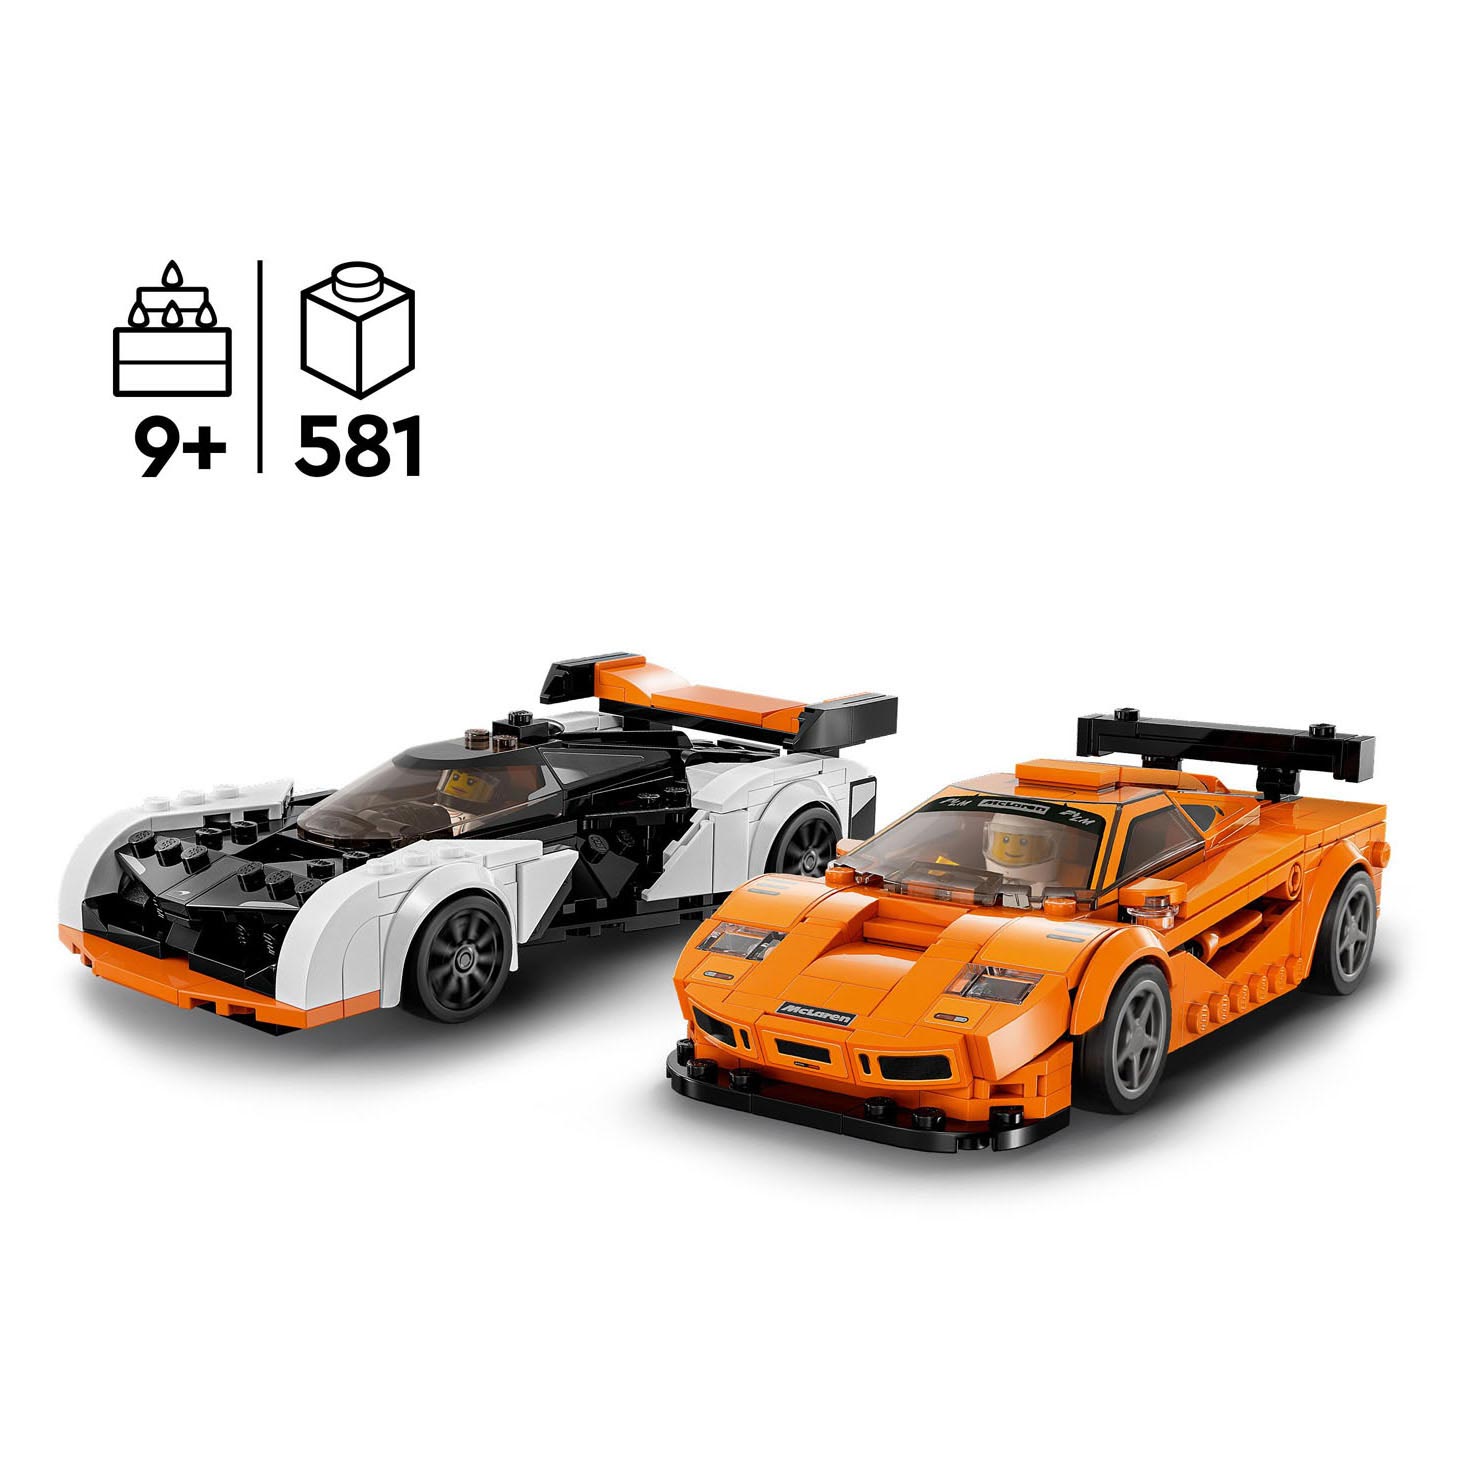 LEGO Speed ​​​​Champions 76918 McLaren Solus GT et McLaren F1 LM